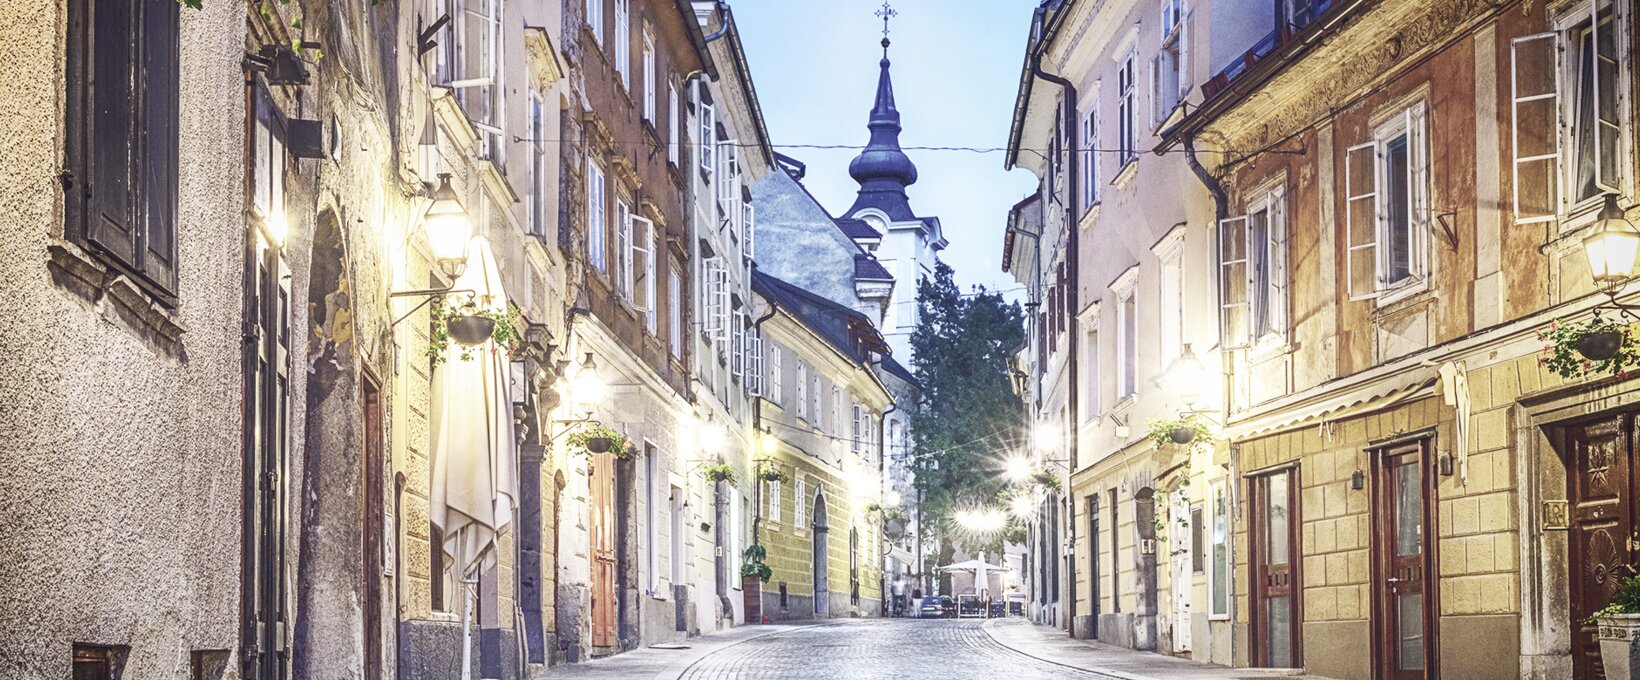 Old town per night | Ljubljana